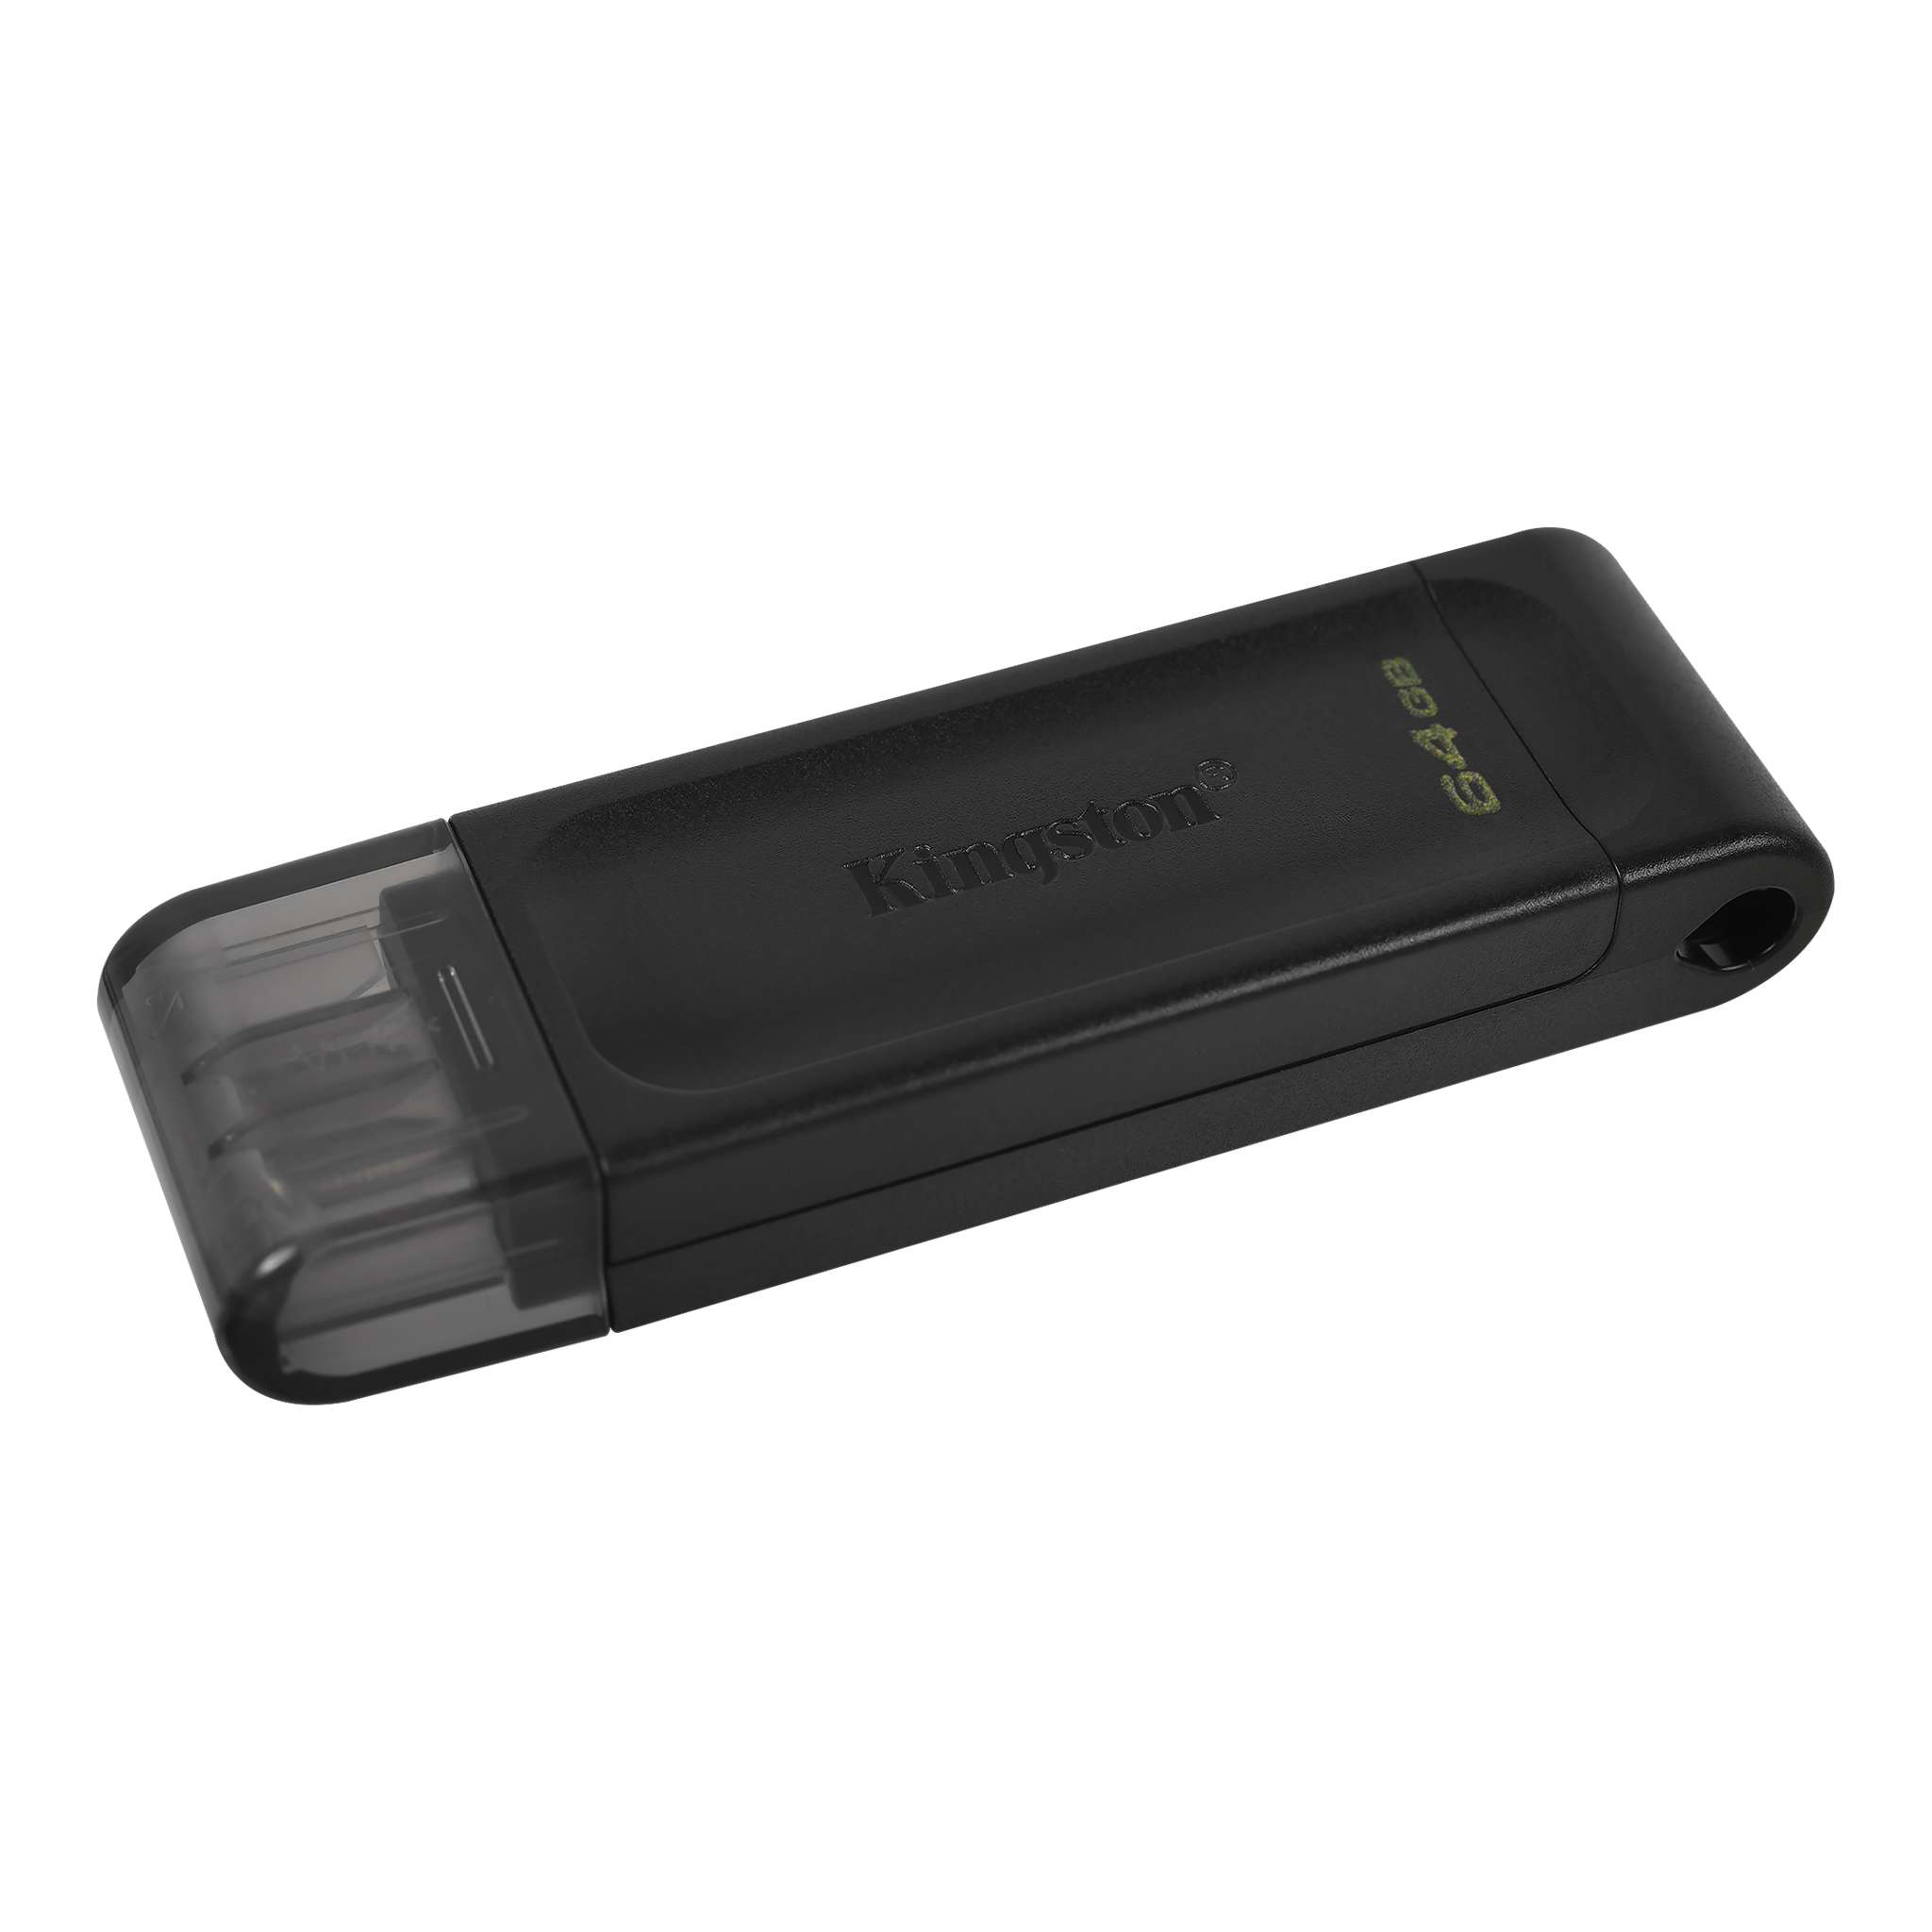 DT70-64GB – KINGSTON DATATRAVELER 70.02